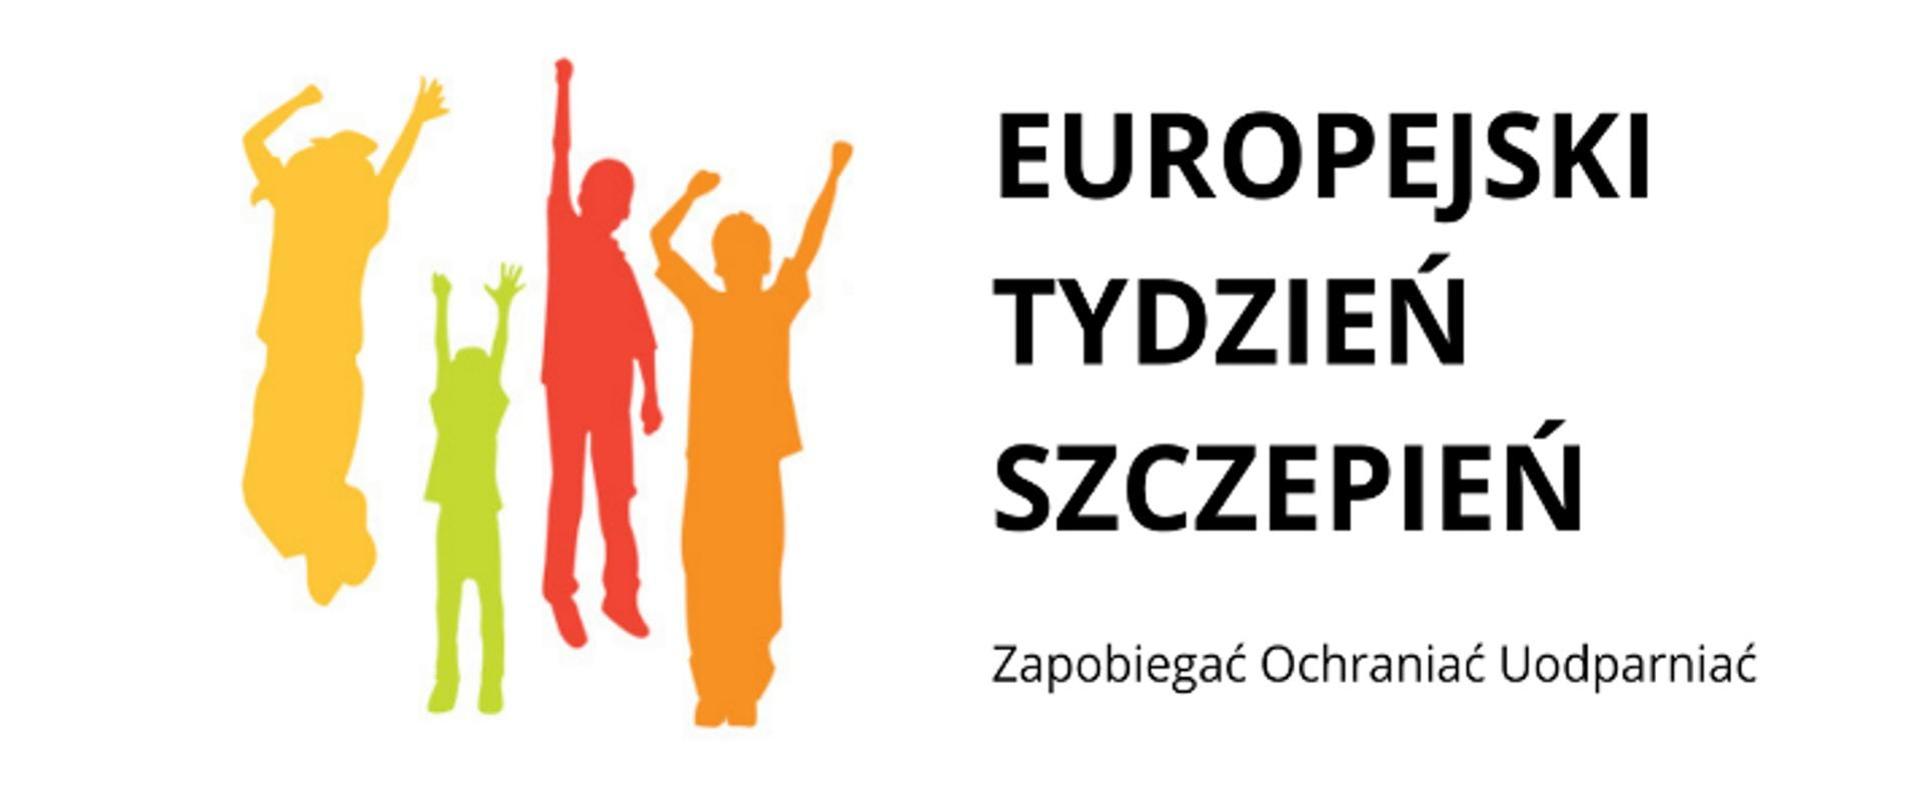 Na zdjęciu widoczne są postury czterech osób z uniesionymi rękami w kolorze żółtym, zielonym, czerwonym i pomarańczowym oraz napis: Europejski Tydzień Szczepień Zapobiegać Ochraniać Uodparniać.